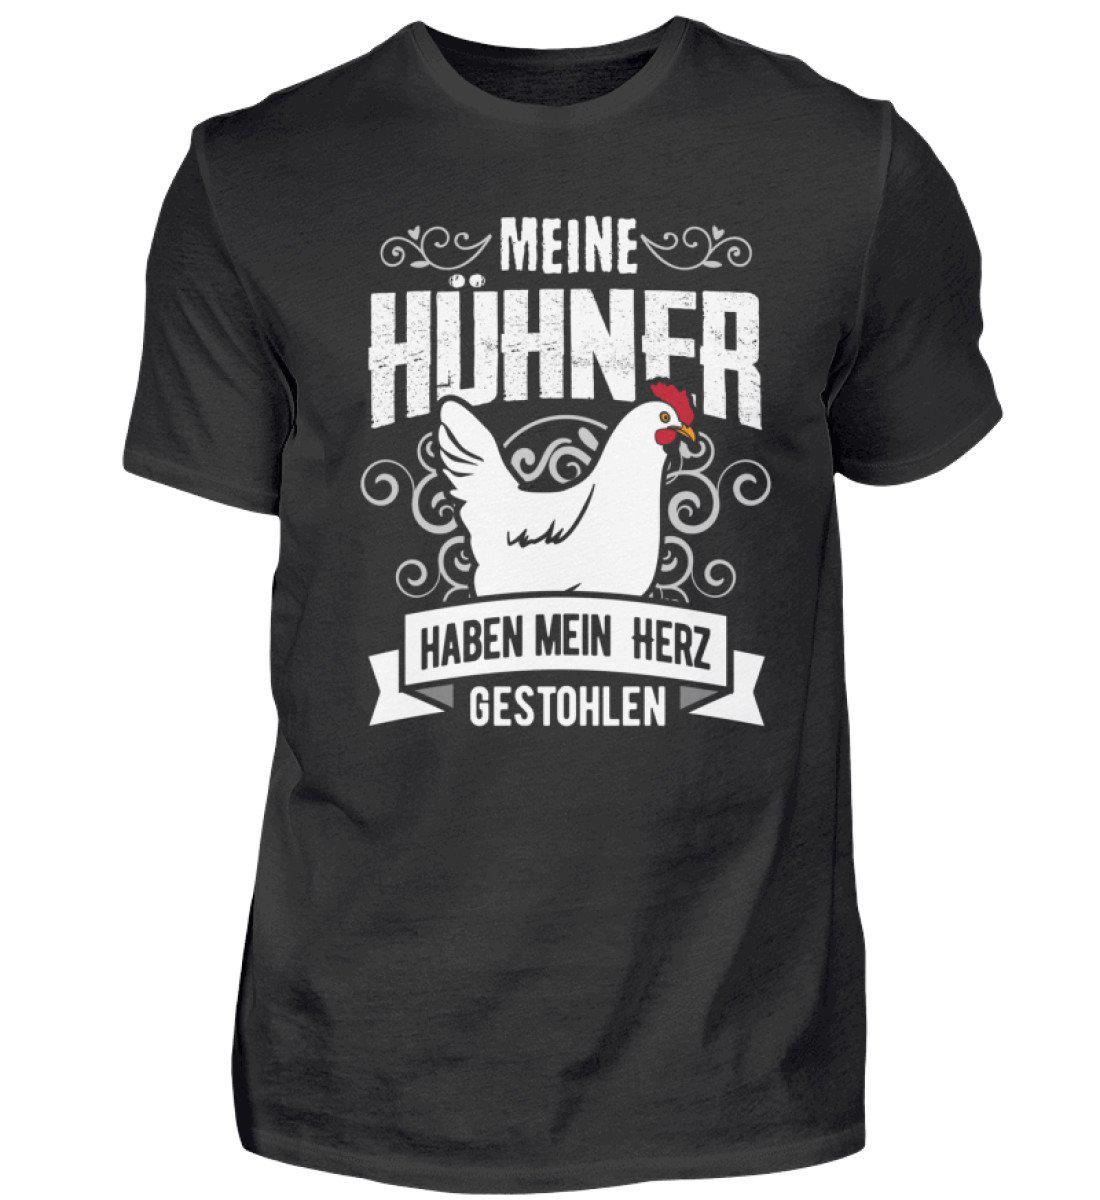 Hühner Herz gestohlen · Herren T-Shirt-Herren Basic T-Shirt-Black-S-Agrarstarz